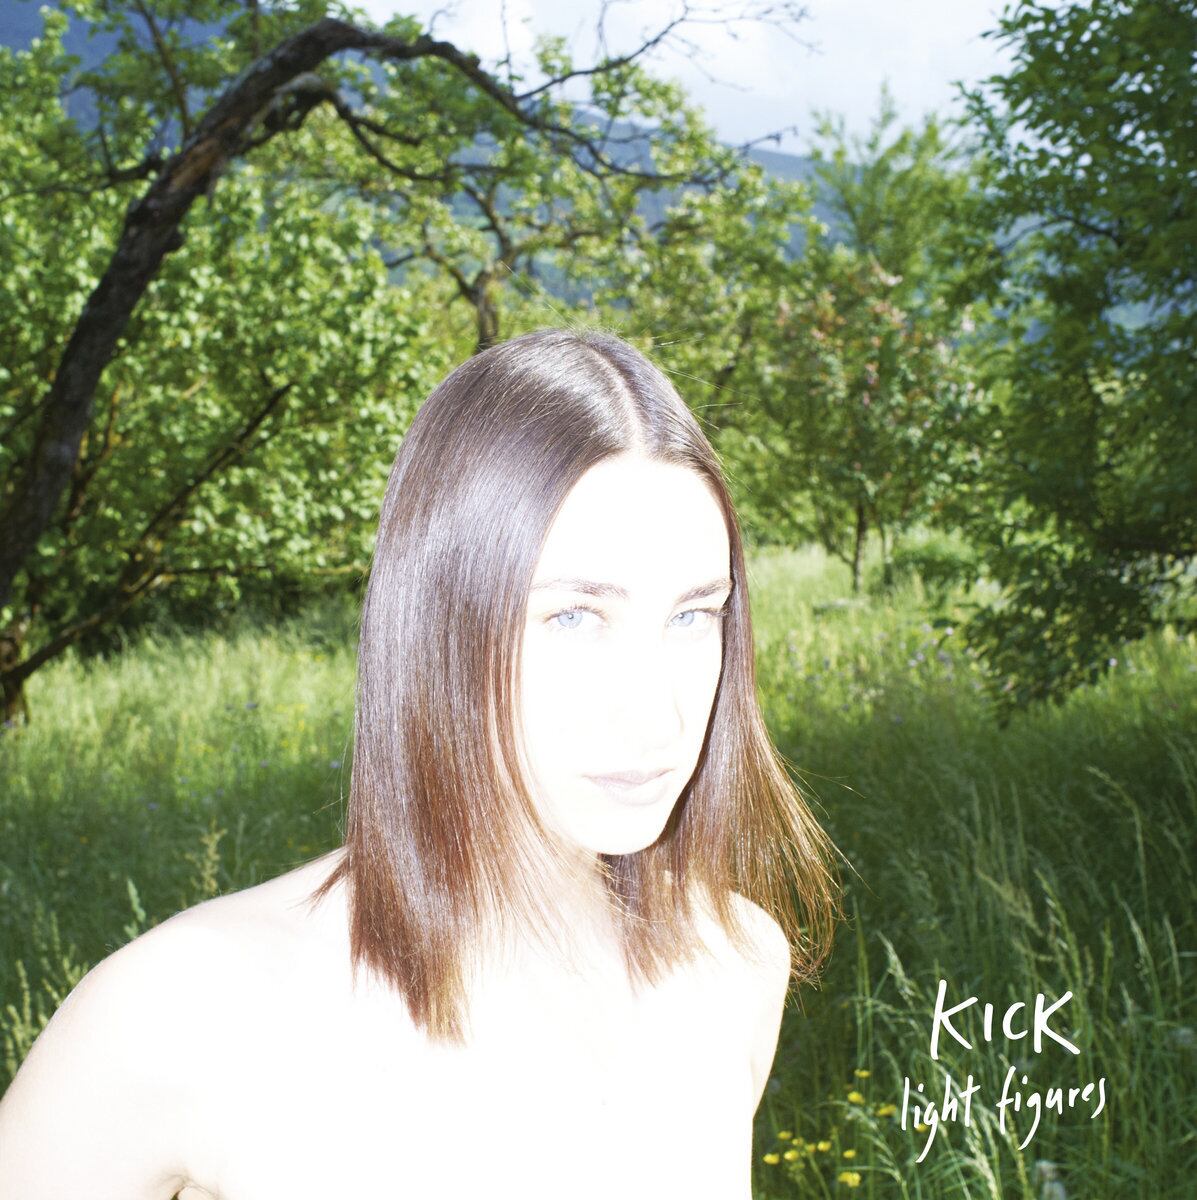 KICK / Light Figures（Ltd White LP）